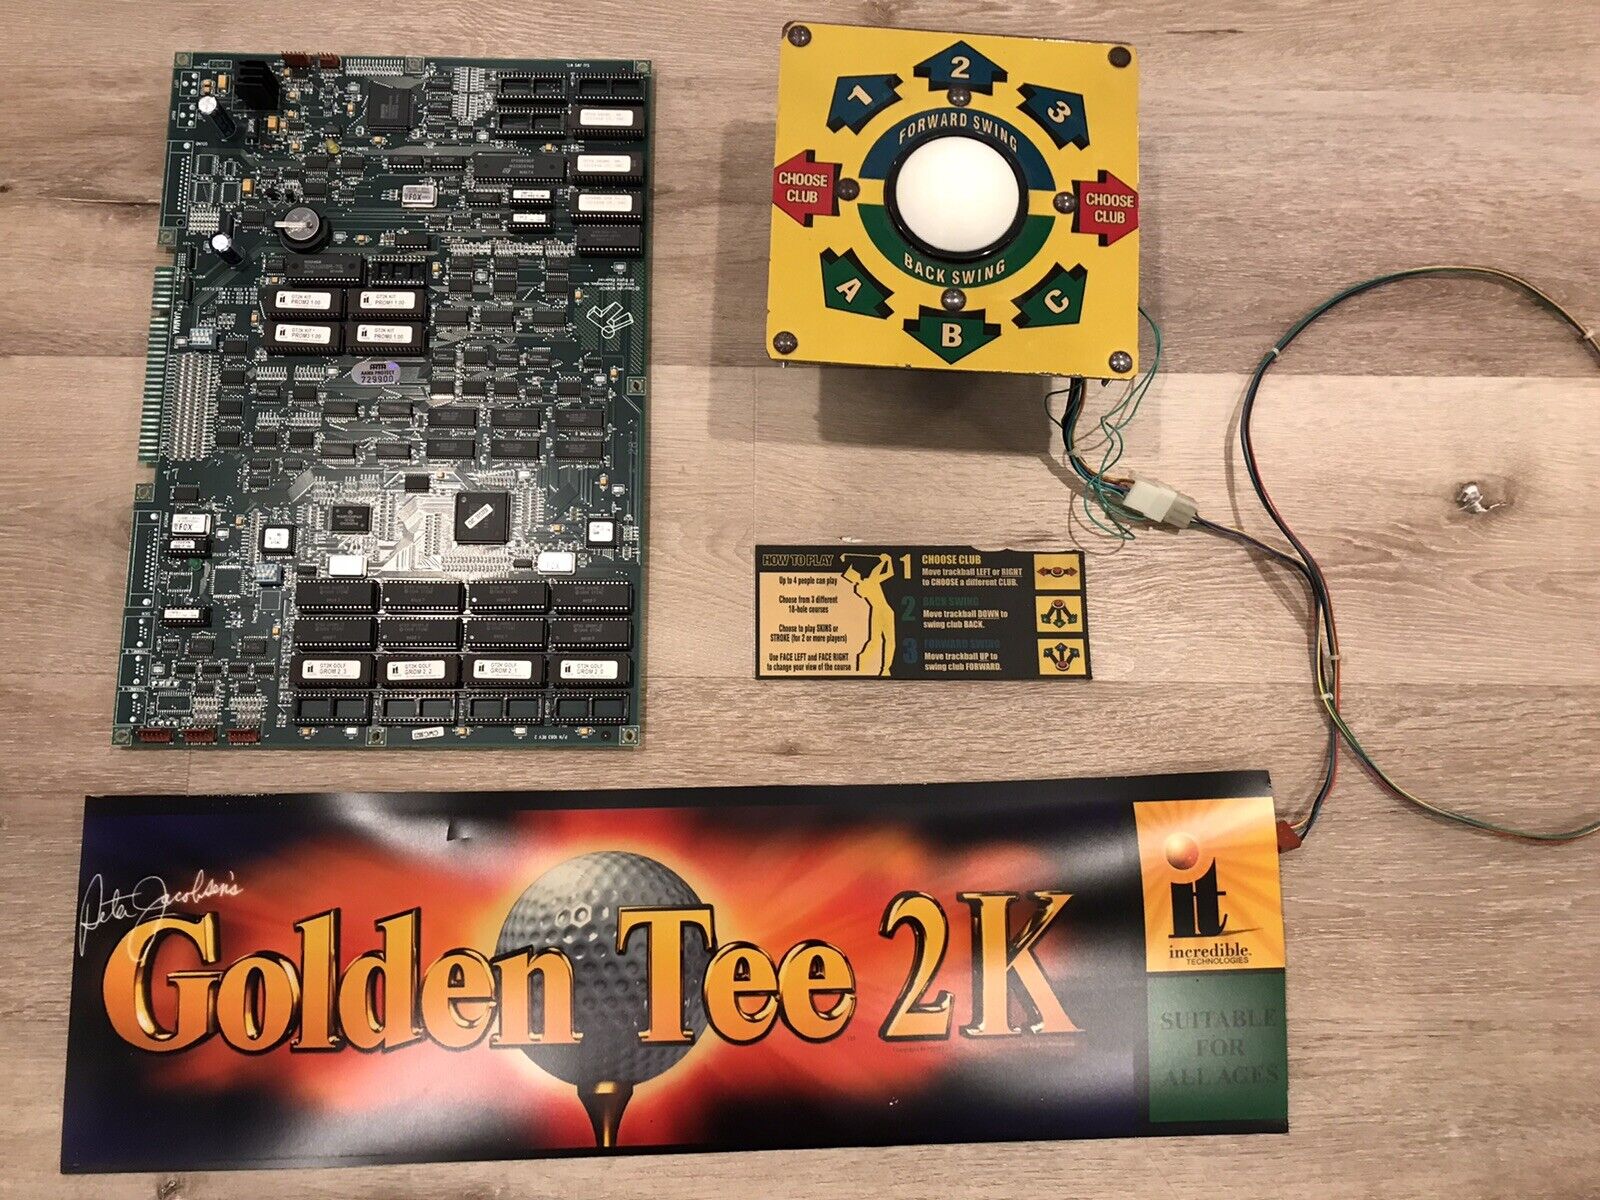 Golden Tee 2k Arcade